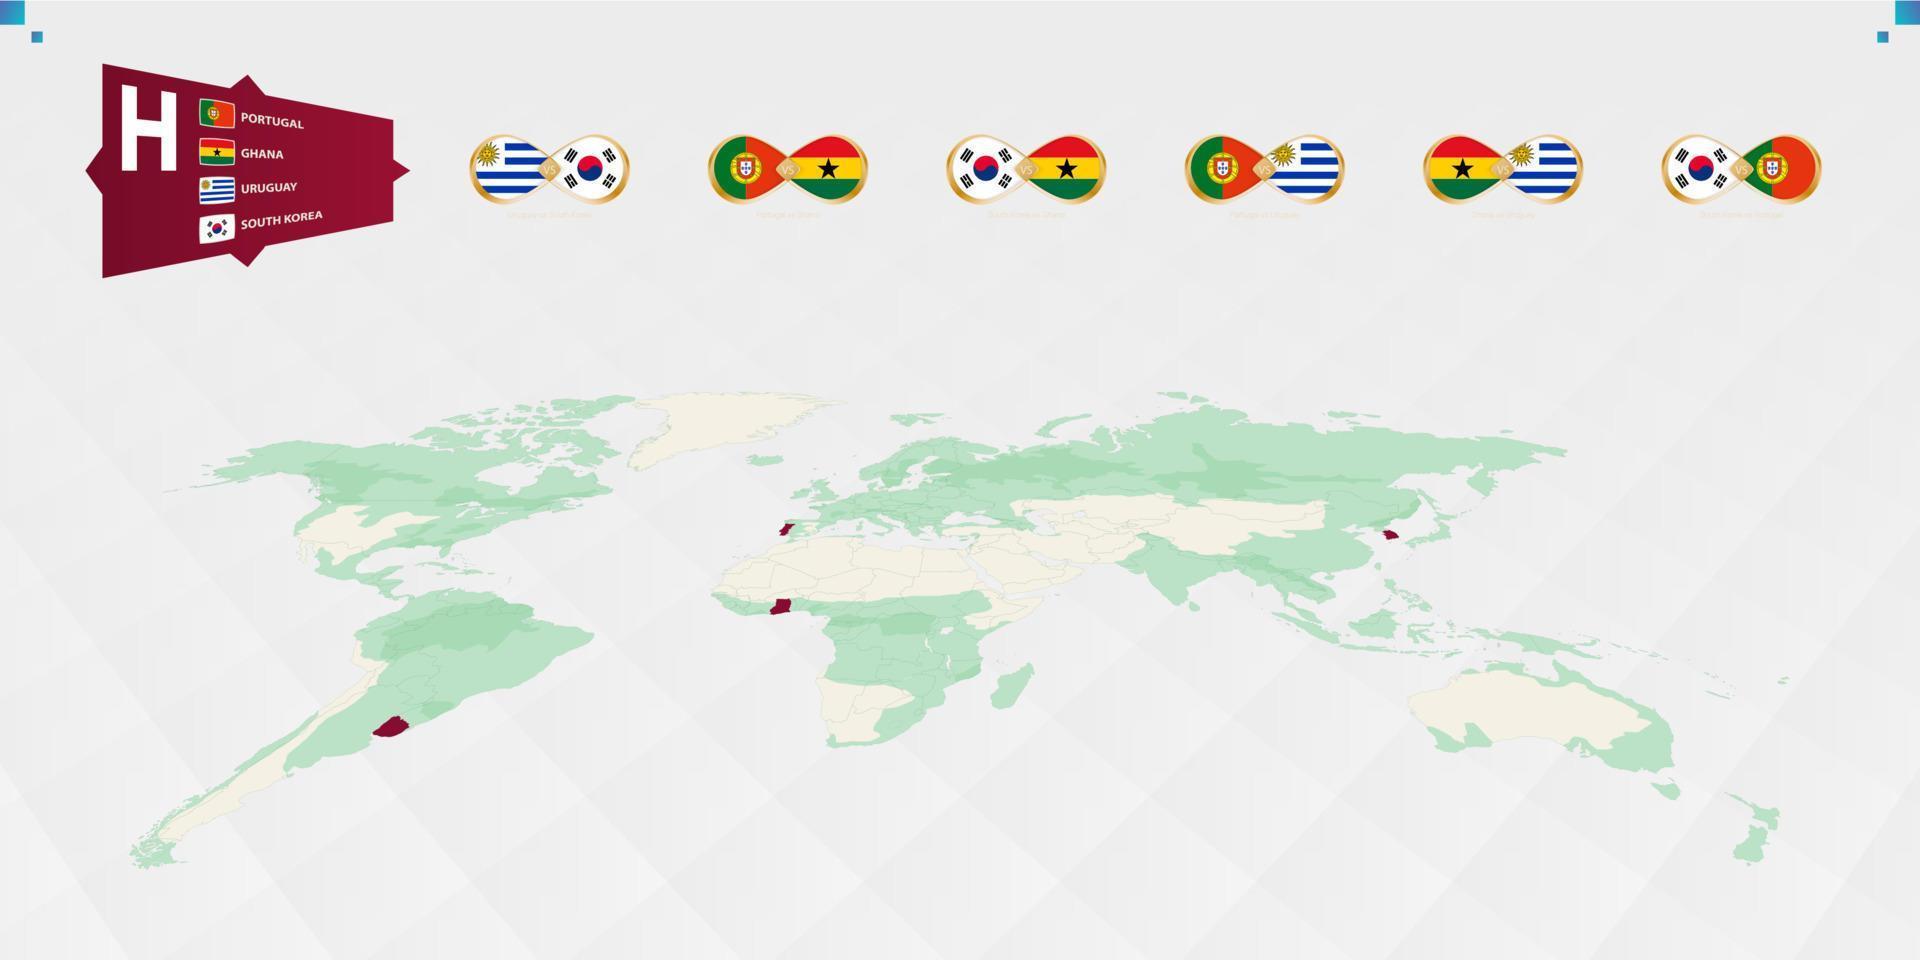 participants du groupe h du tournoi de football, mis en évidence en bordeaux sur la carte du monde. tous les jeux collectifs. vecteur